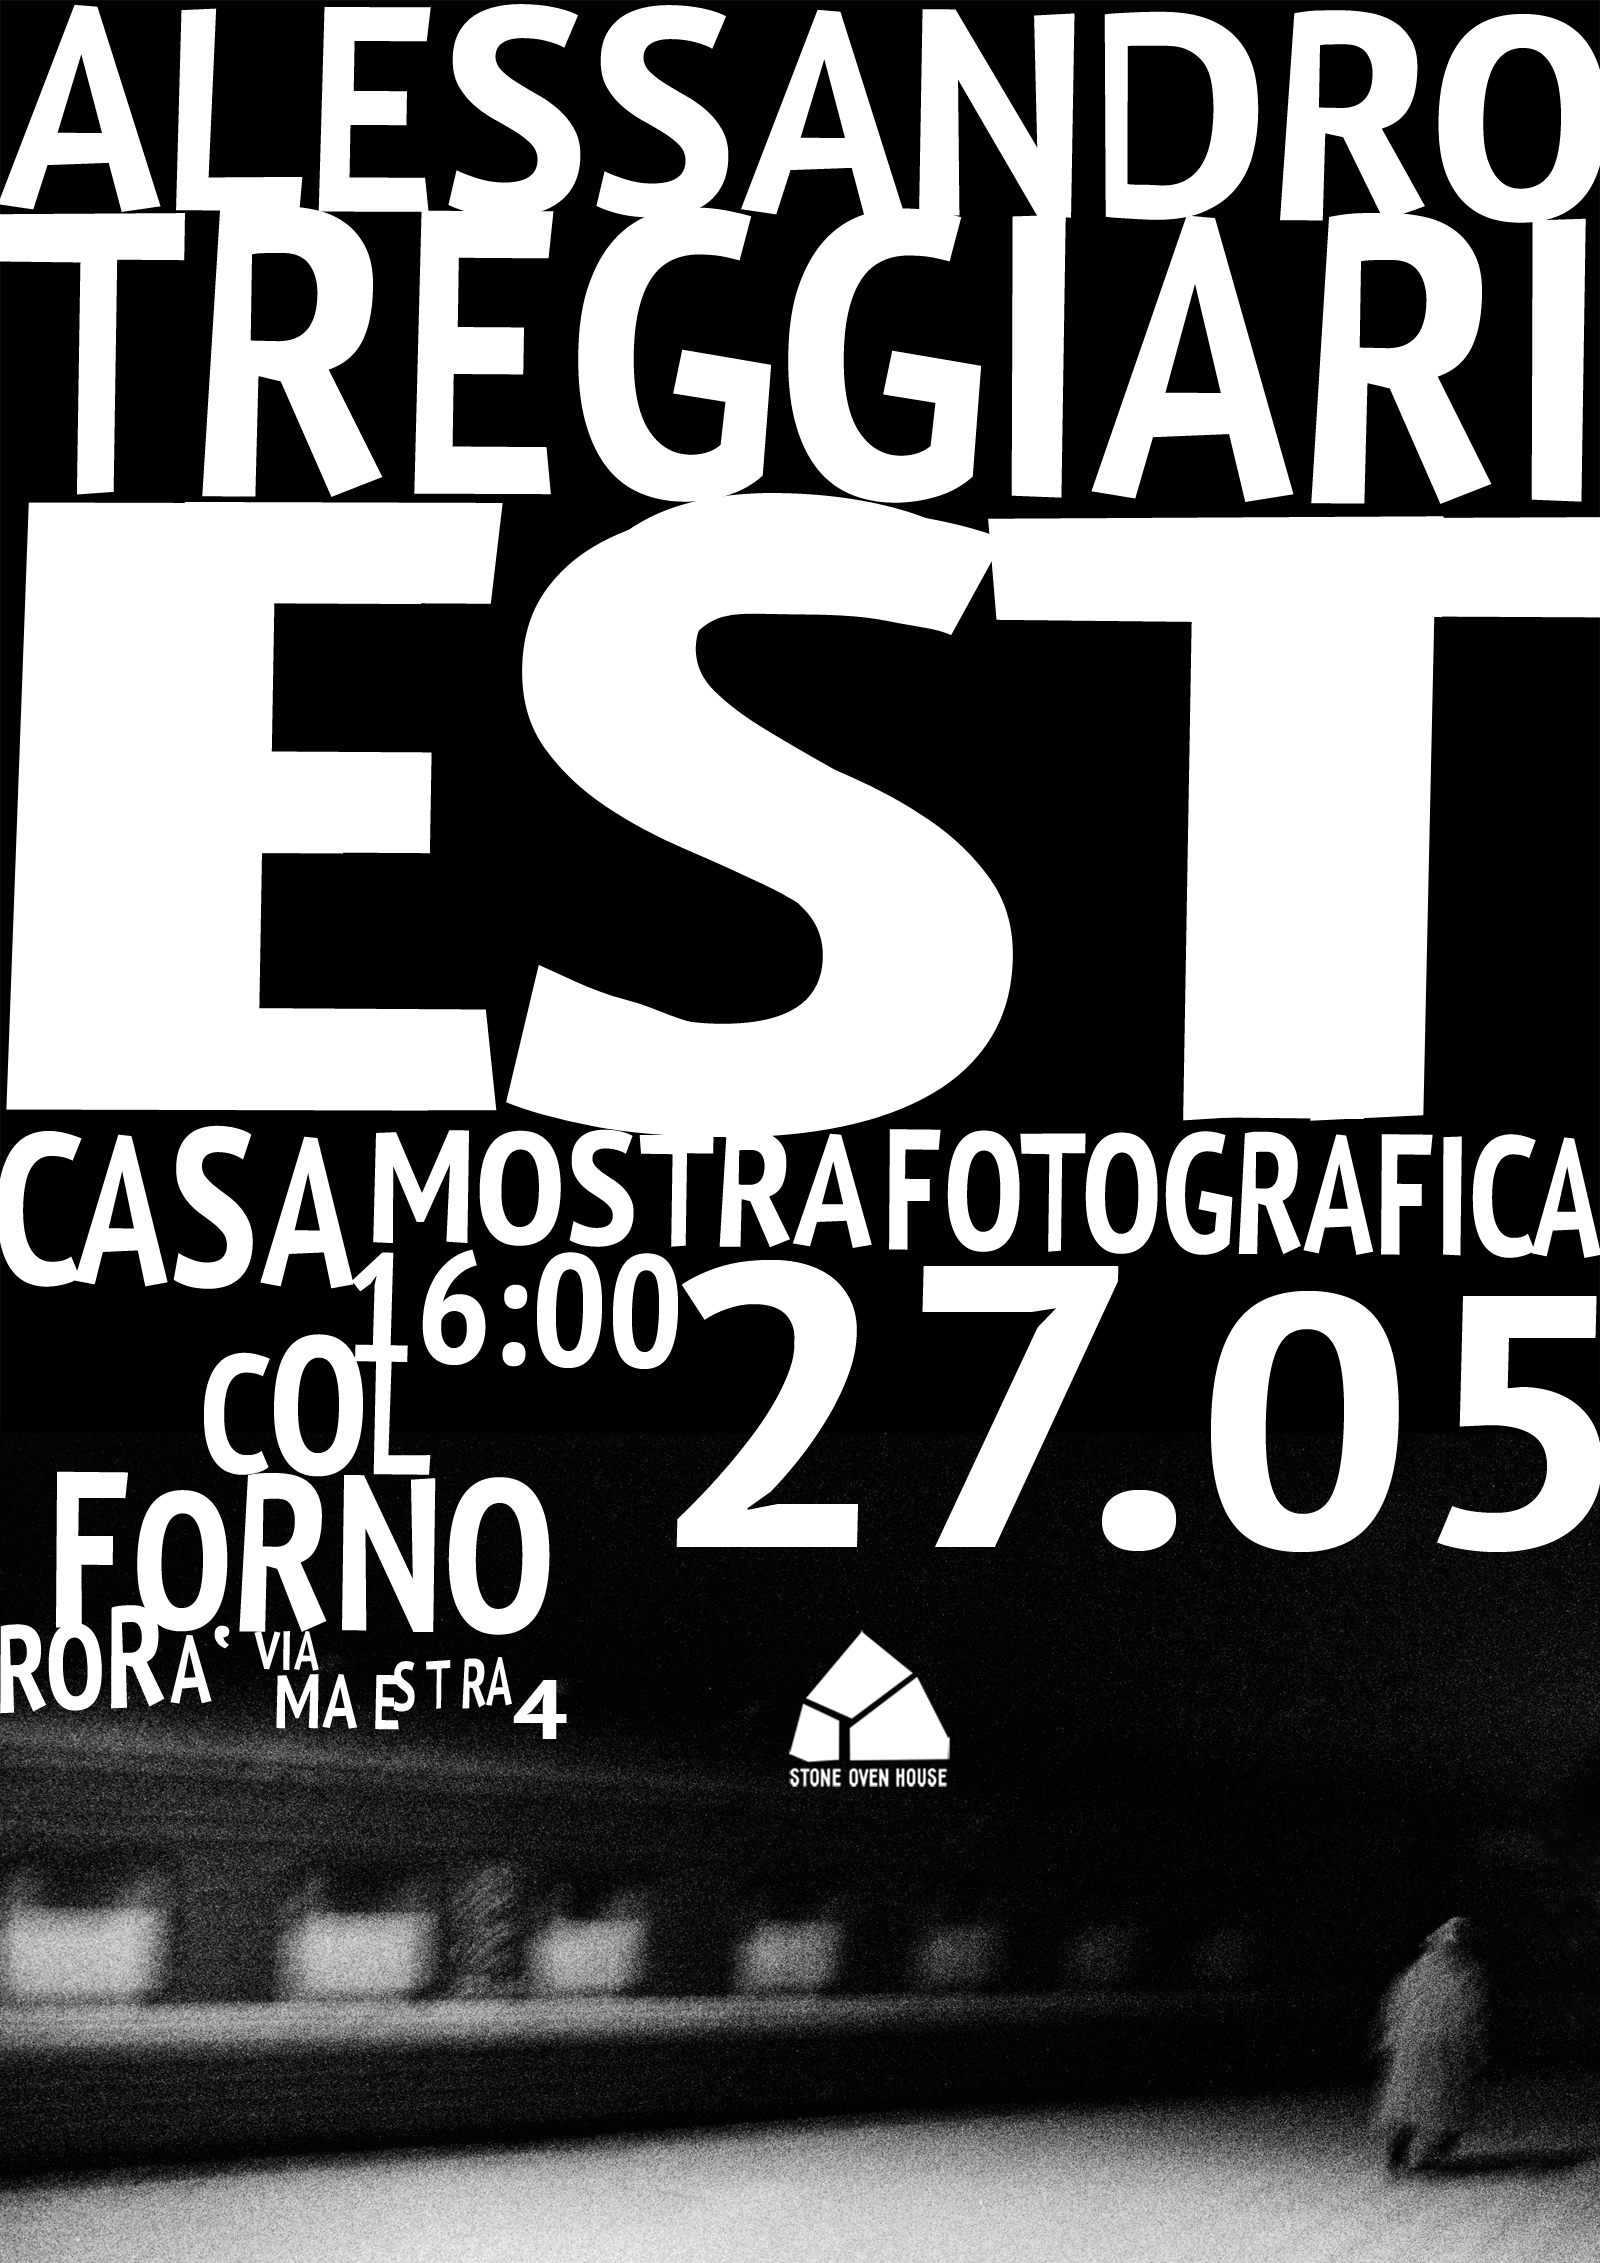 Est. Photo exhibition of Alessandro Treggiari